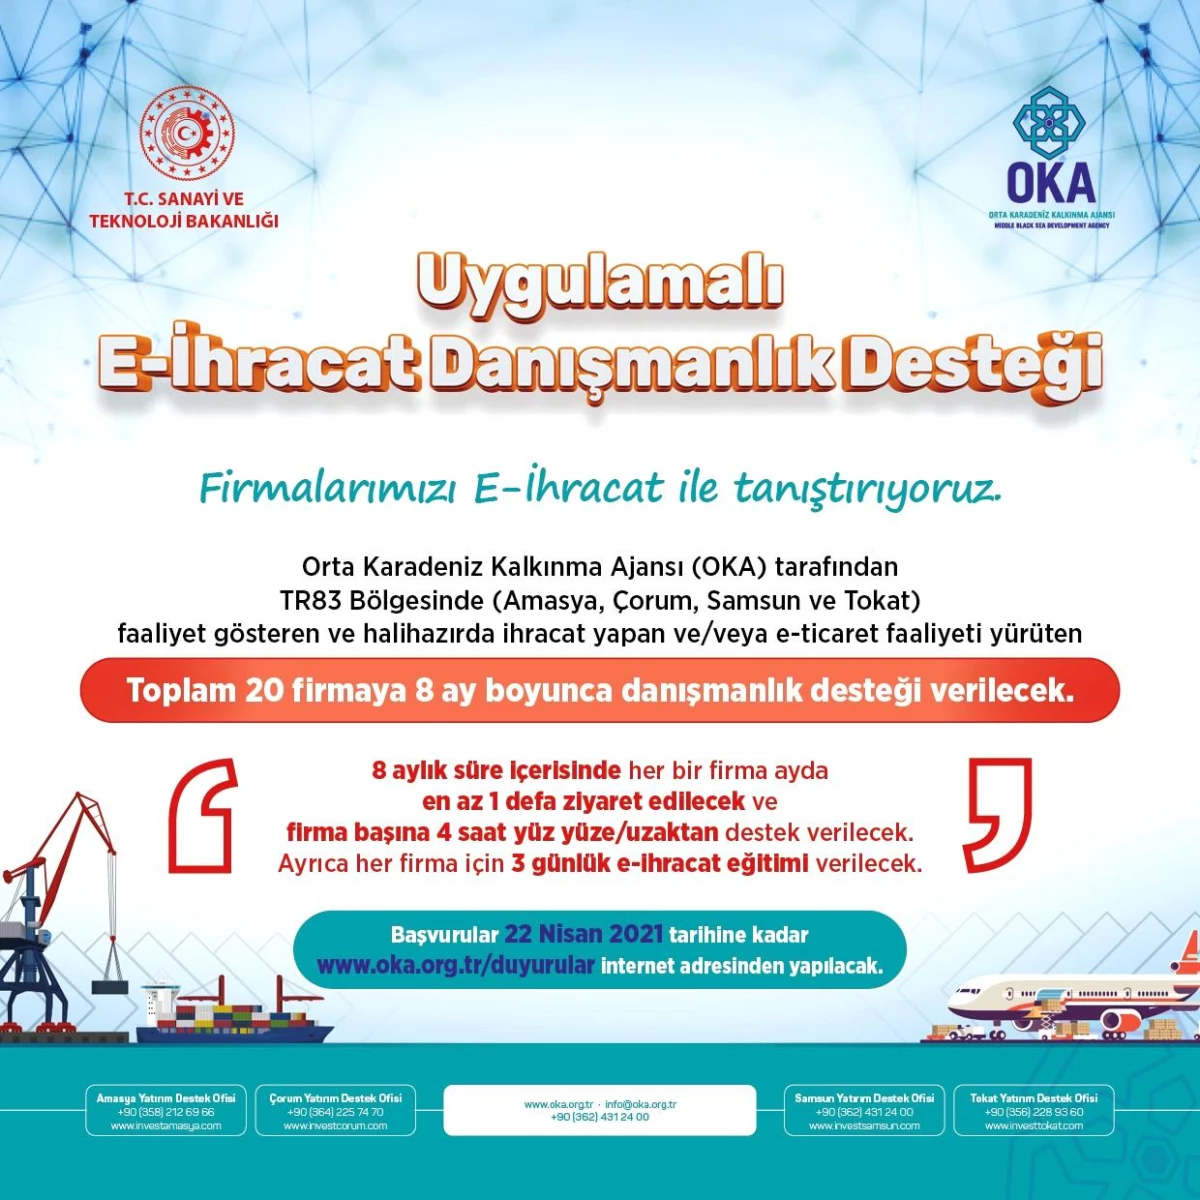 OKA uygulamalı e-ihracat danışmanlık desteği başvuruya açıldı